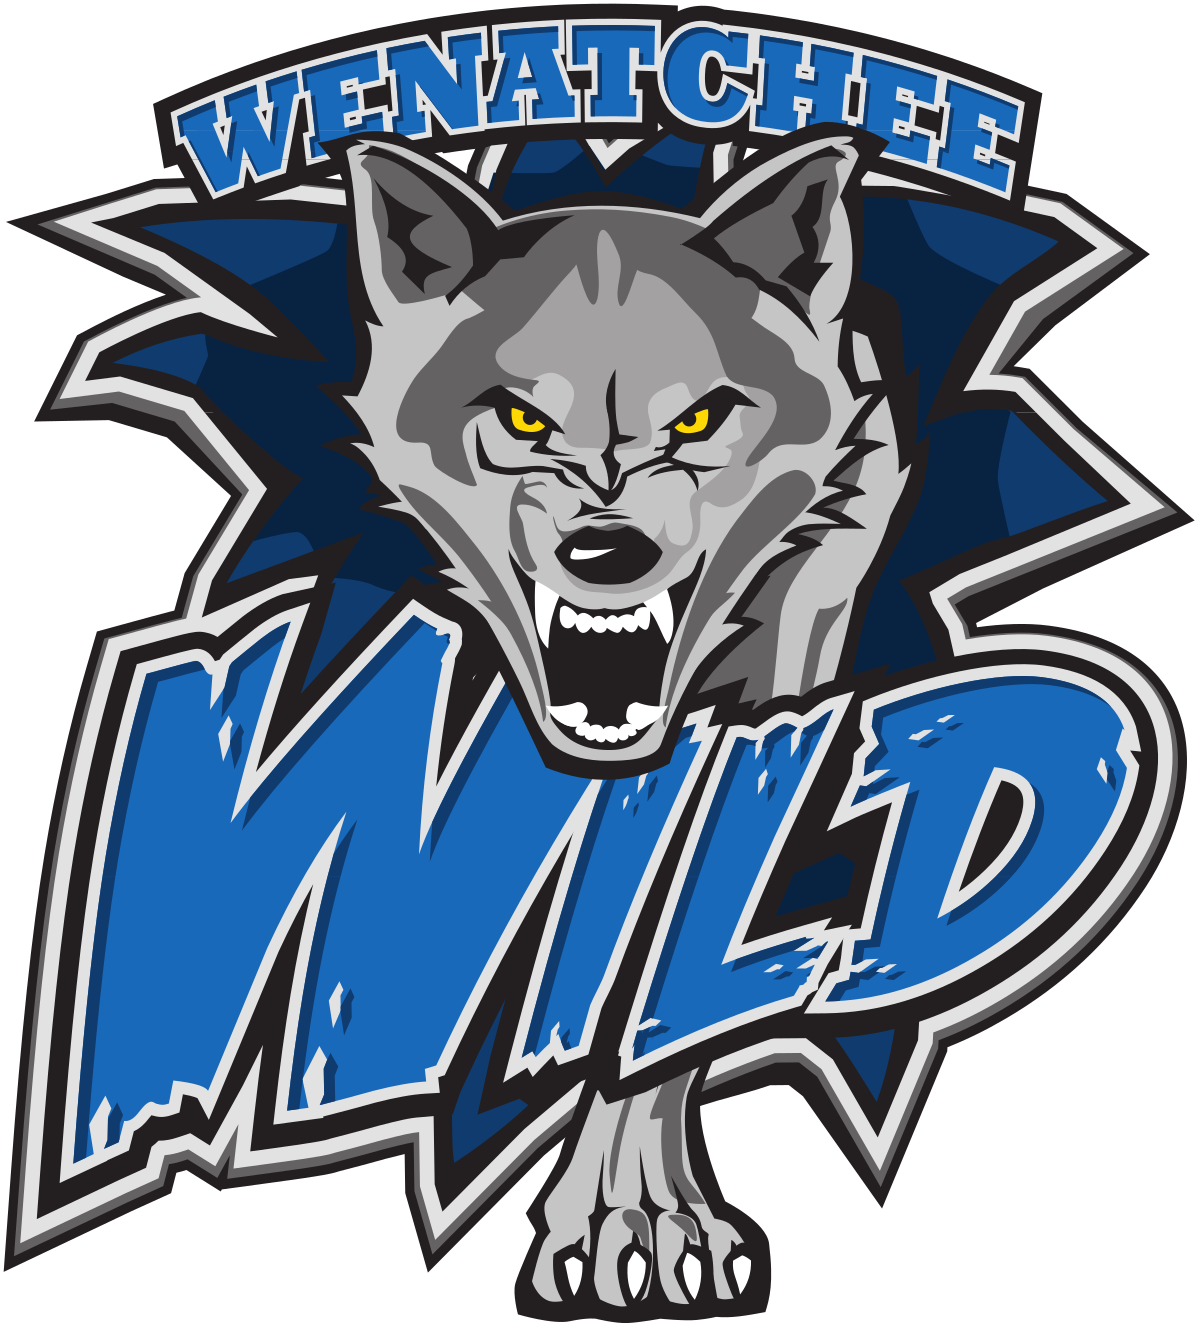 Wenatchee Wild - Wikipedia